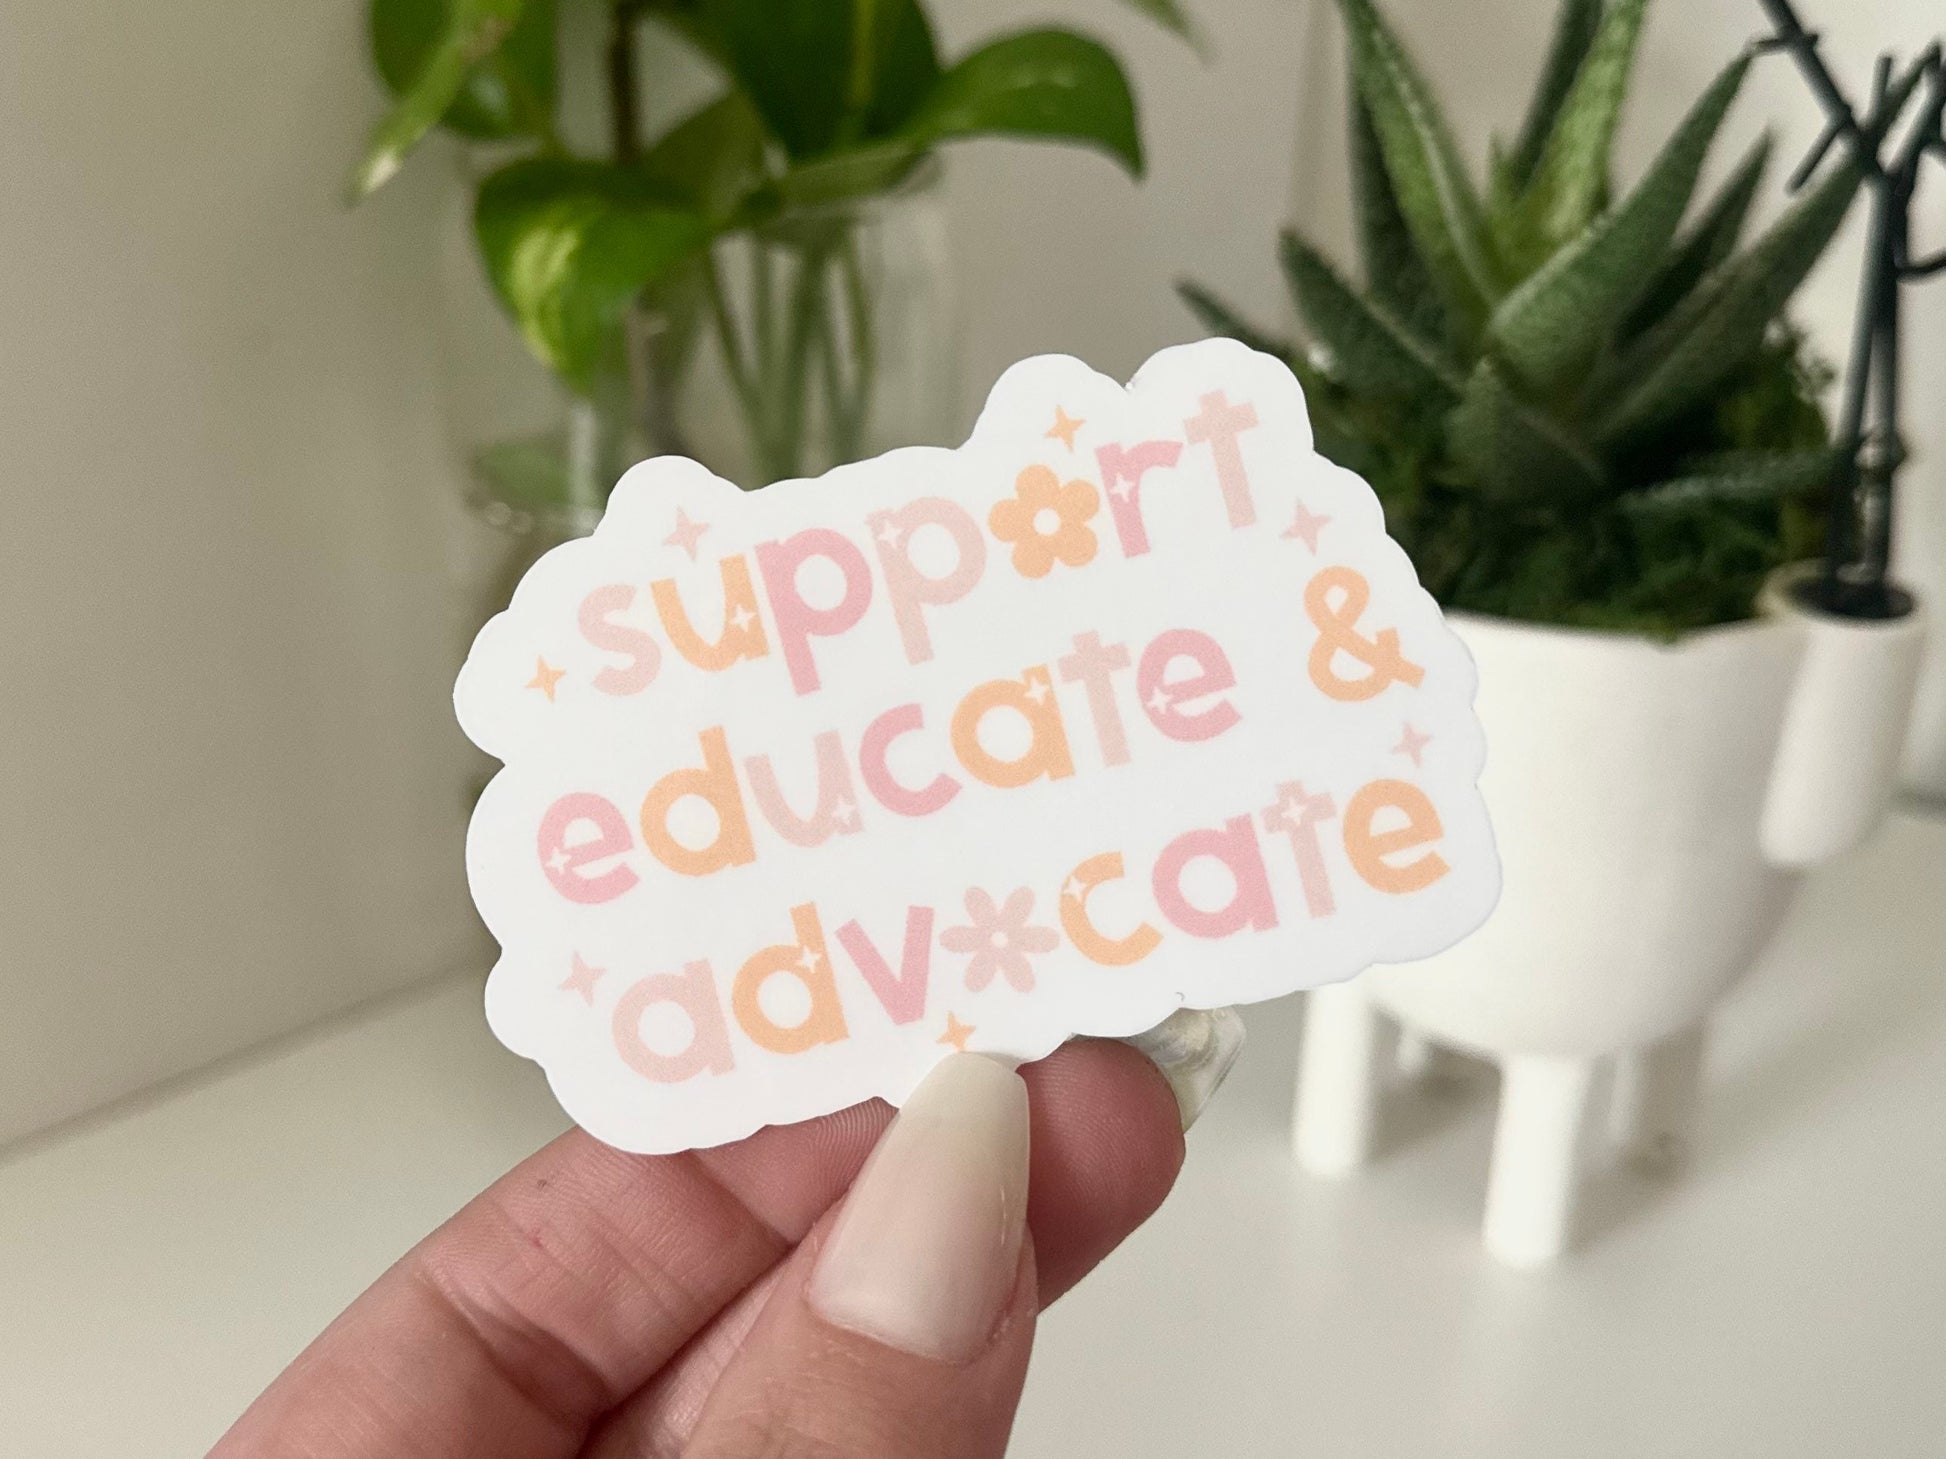 Support, Educate & Advocate Waterproof Sticker, Teacher Stickers, Teacher Gifts, Teacher Cup Decal, Teacher Waterbottle Sticker